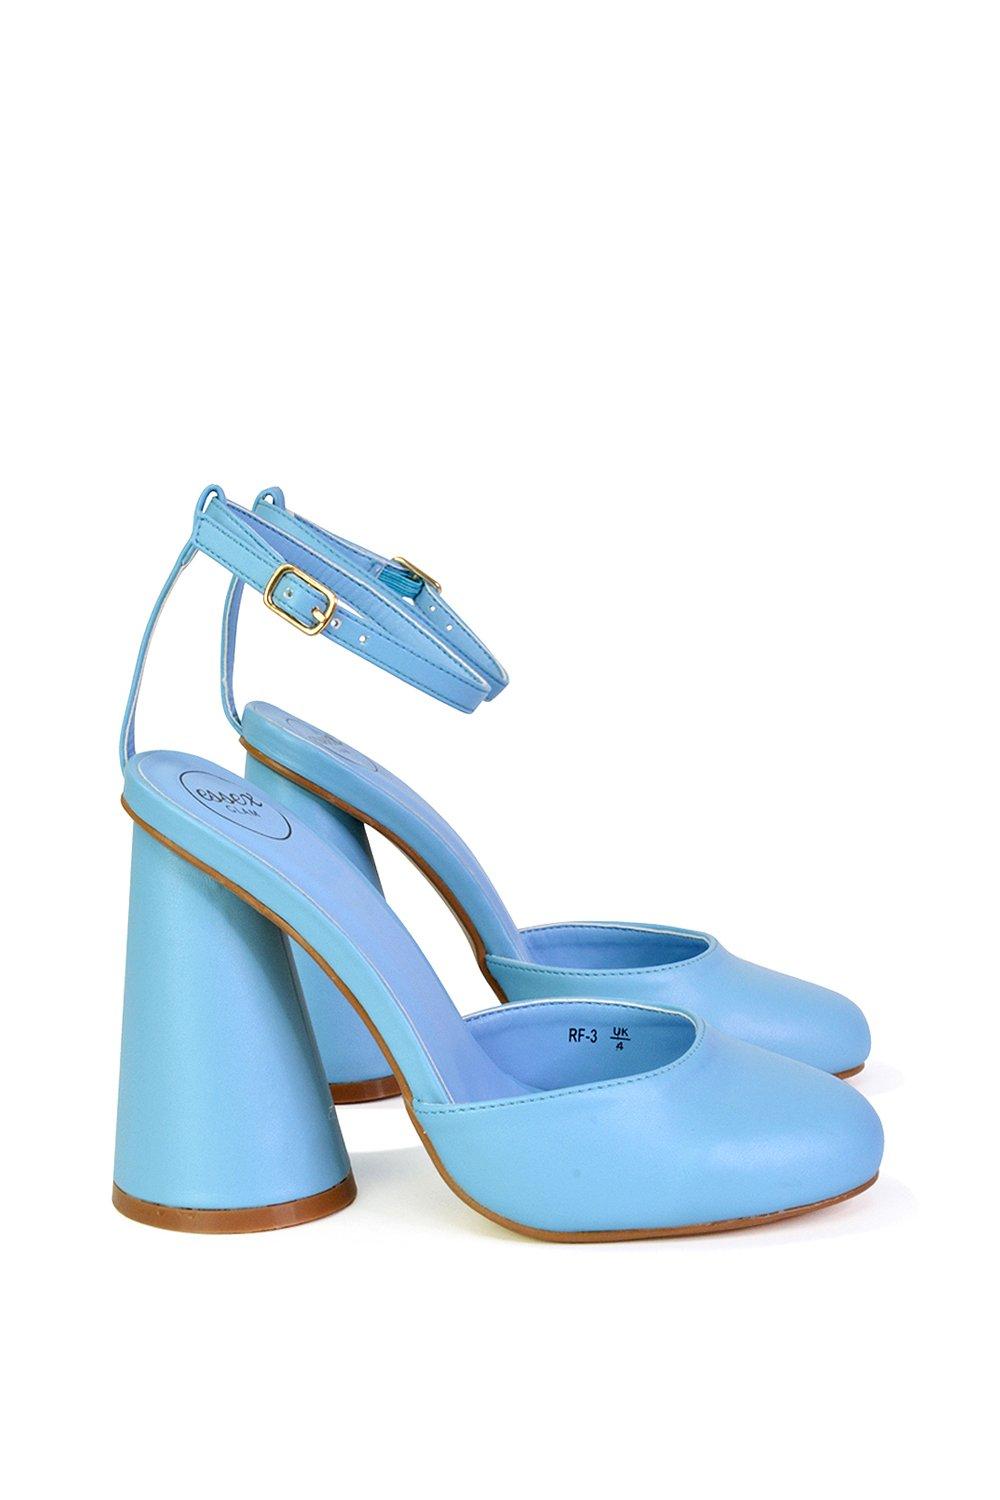 Эффектный каблук с блоком цилиндров и ремешком на щиколотке Ekin XY London, синий туфли женские кожаные на толстом каблуке с бисером на квадратном каблуке